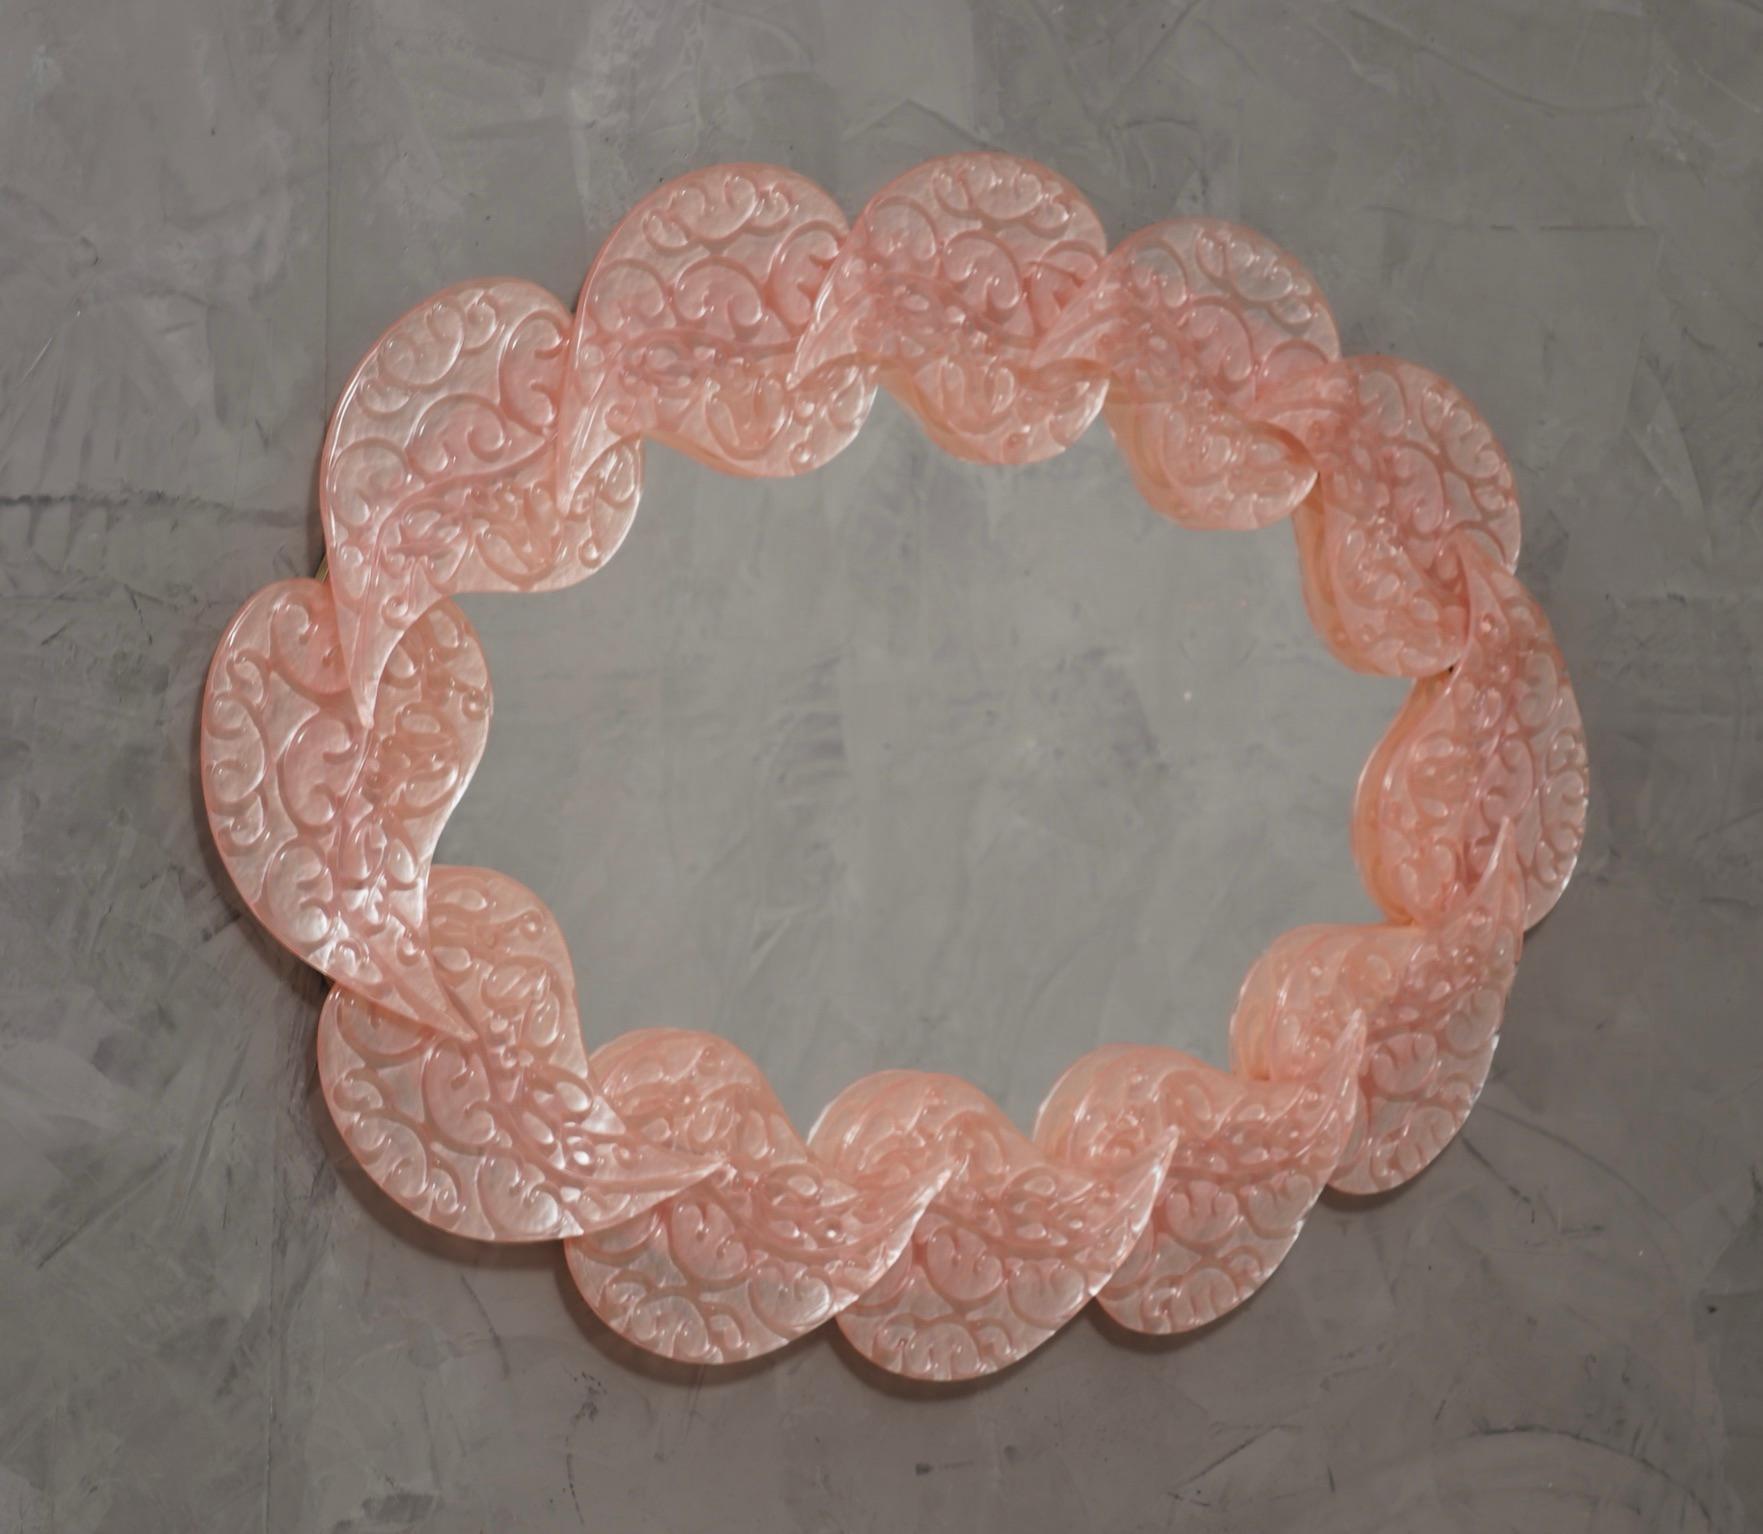 Magnifique miroir en verre de Murano rose flamboyant. Un miroir qui, à lui seul, meublera votre intérieur.

Le miroir a une structure arrière en bois, sur laquelle une série de feuilles en verre de Murano sont montées pour former un ovale comme on